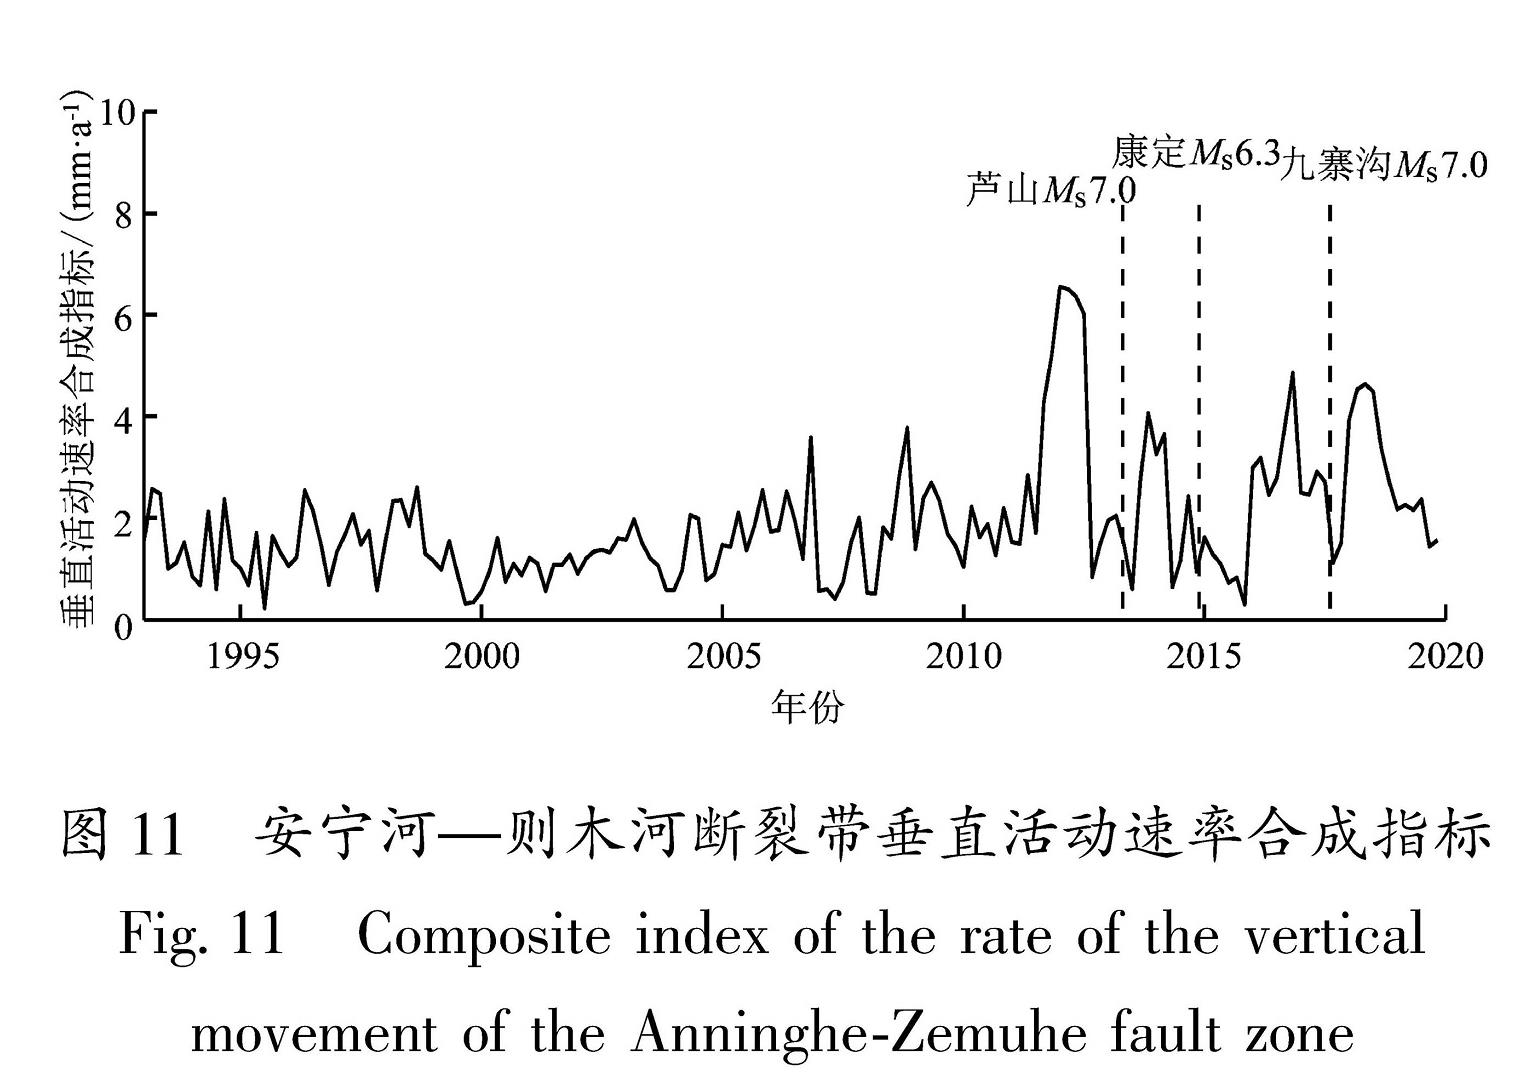 图11 安宁河—则木河断裂带垂直活动速率合成指标<br/>Fig.11 Composite index of the rate of the vertical movement of the Anninghe-Zemuhe fault zone